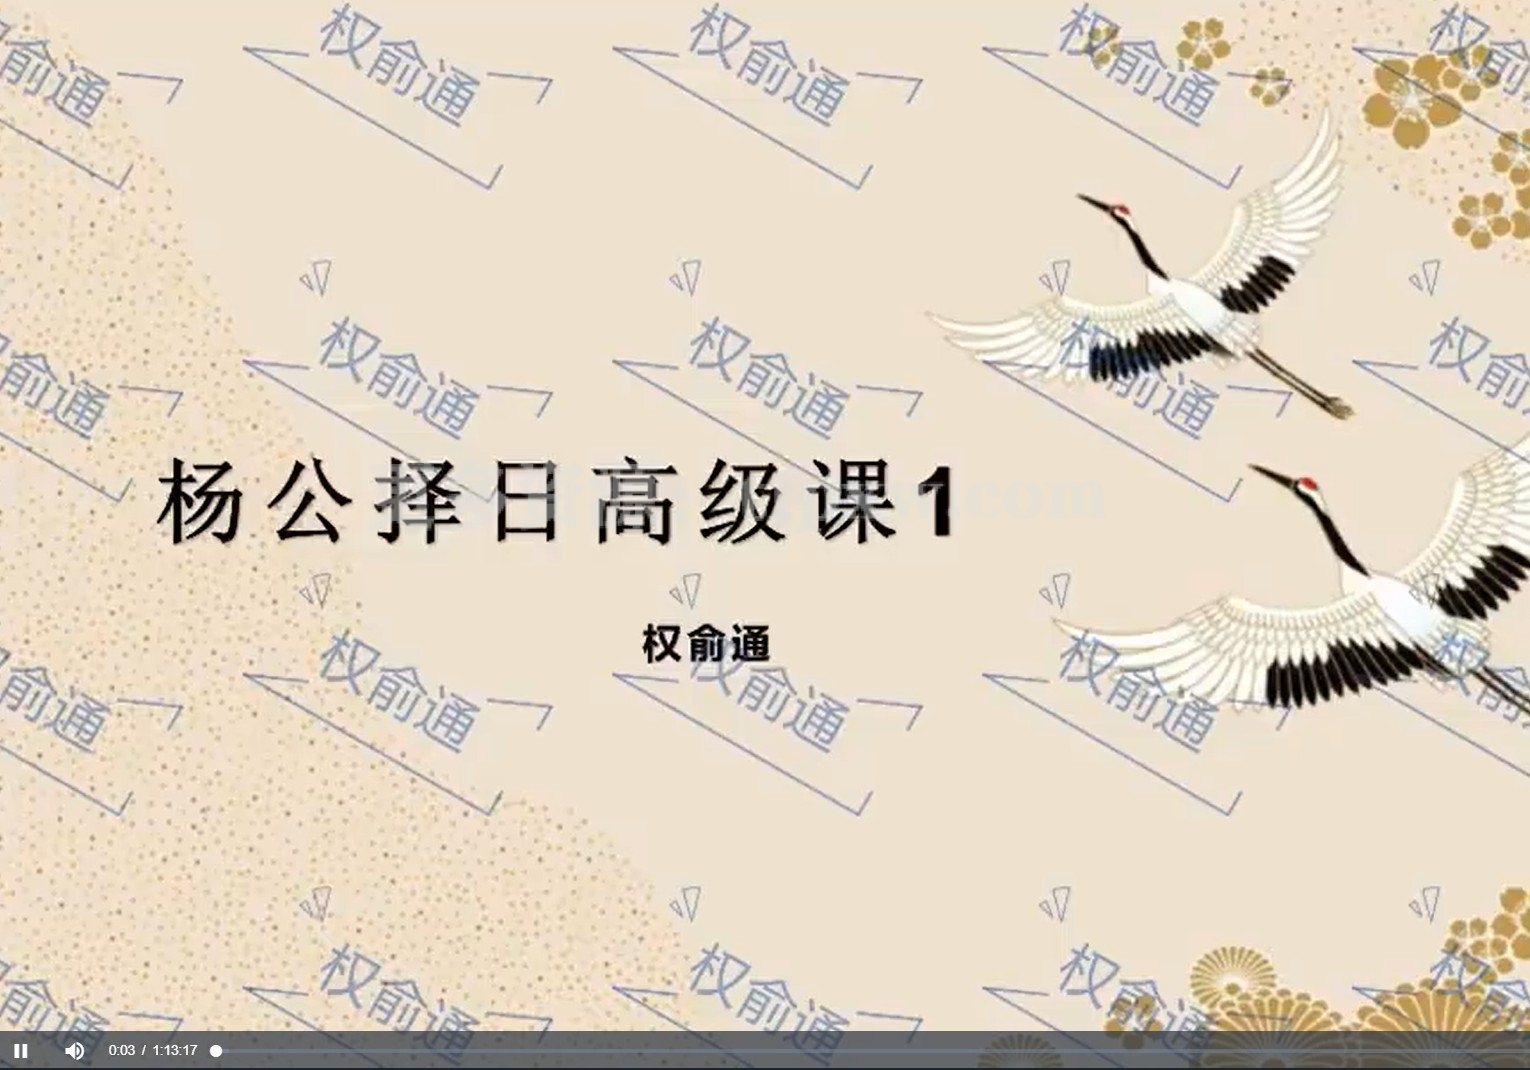 权俞通杨公择日高级课8集视频插图